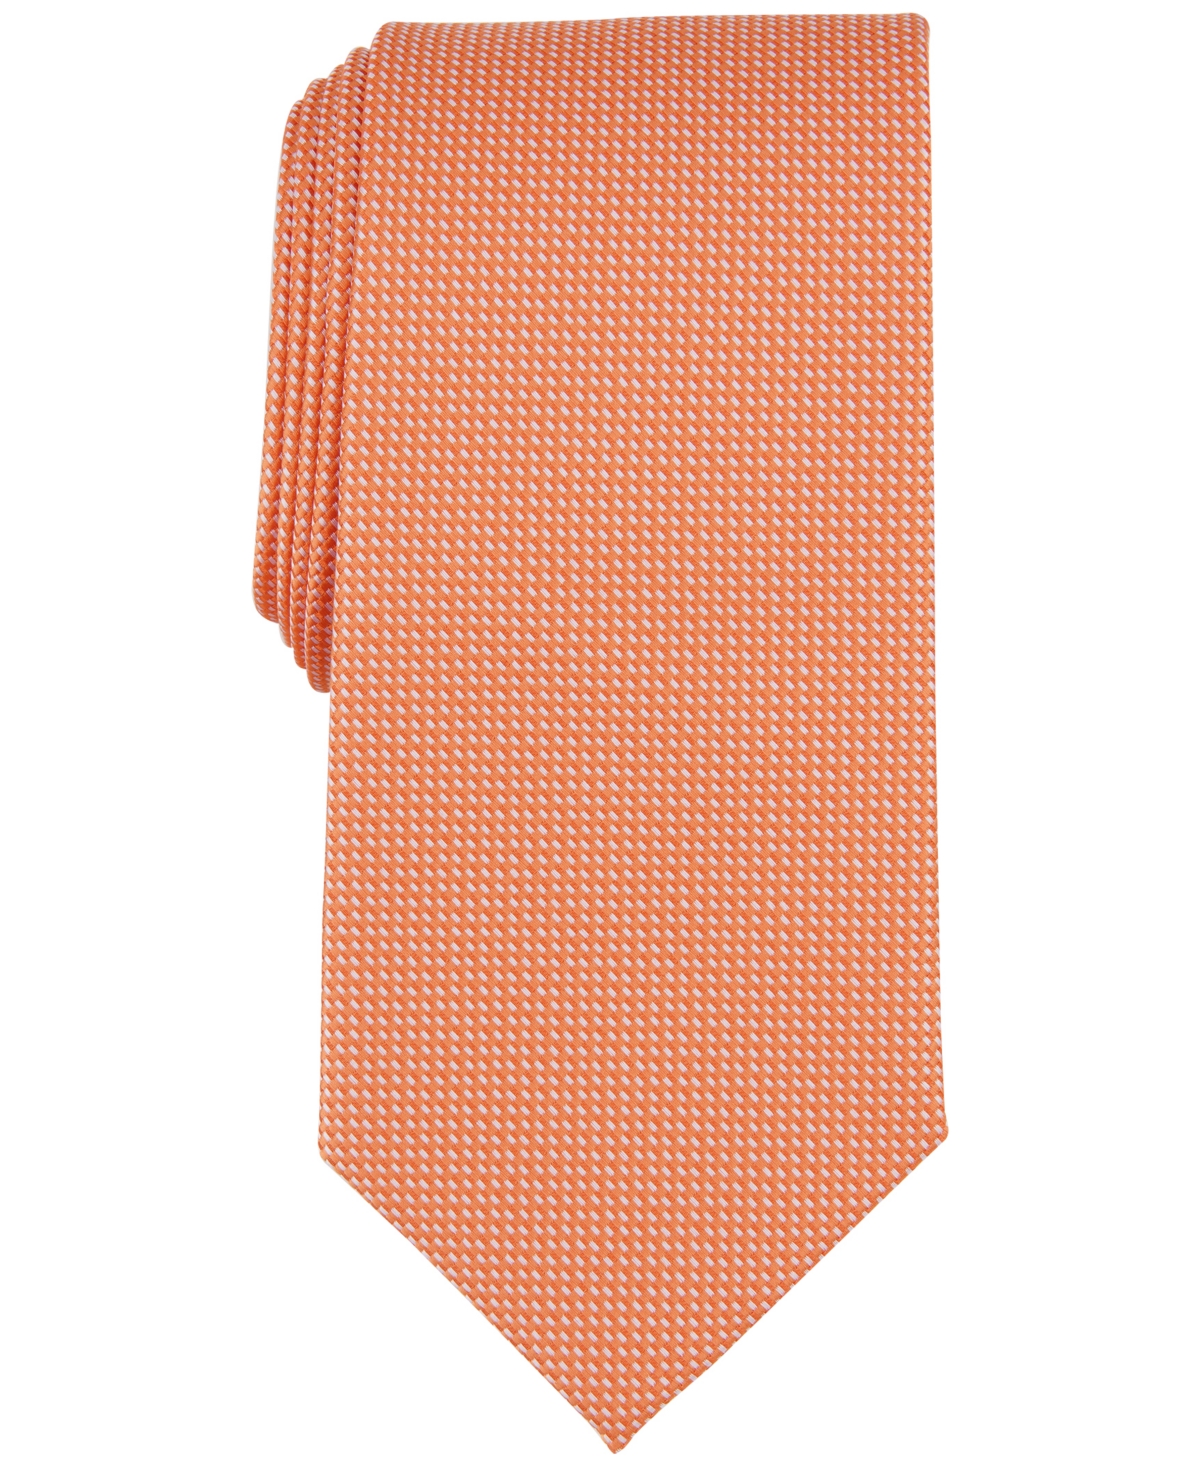 Men's Elm Solid Textured Tie, Created for Macy's - Orange